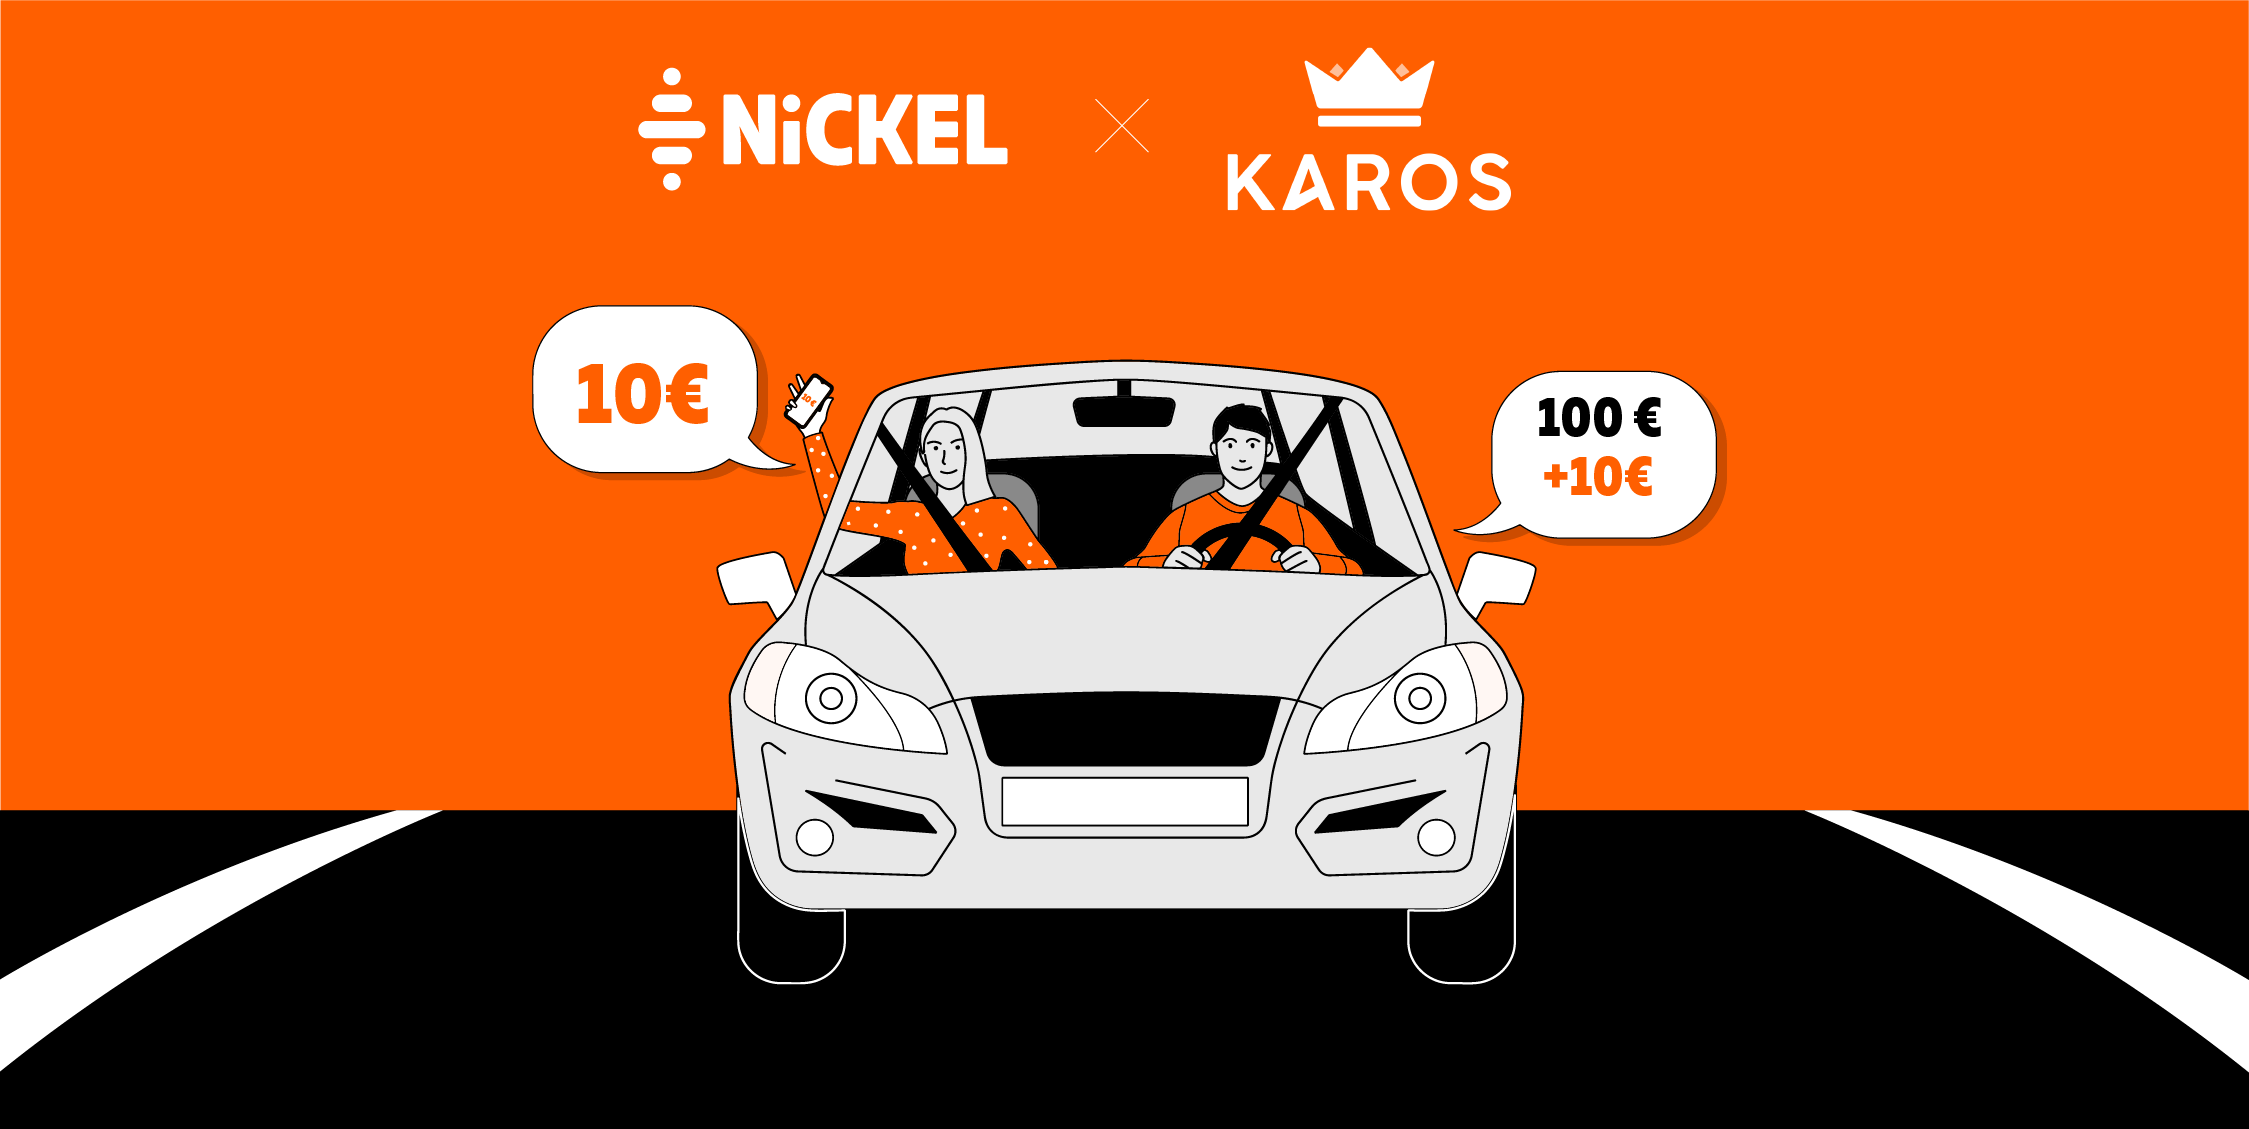 Nickel x Karos